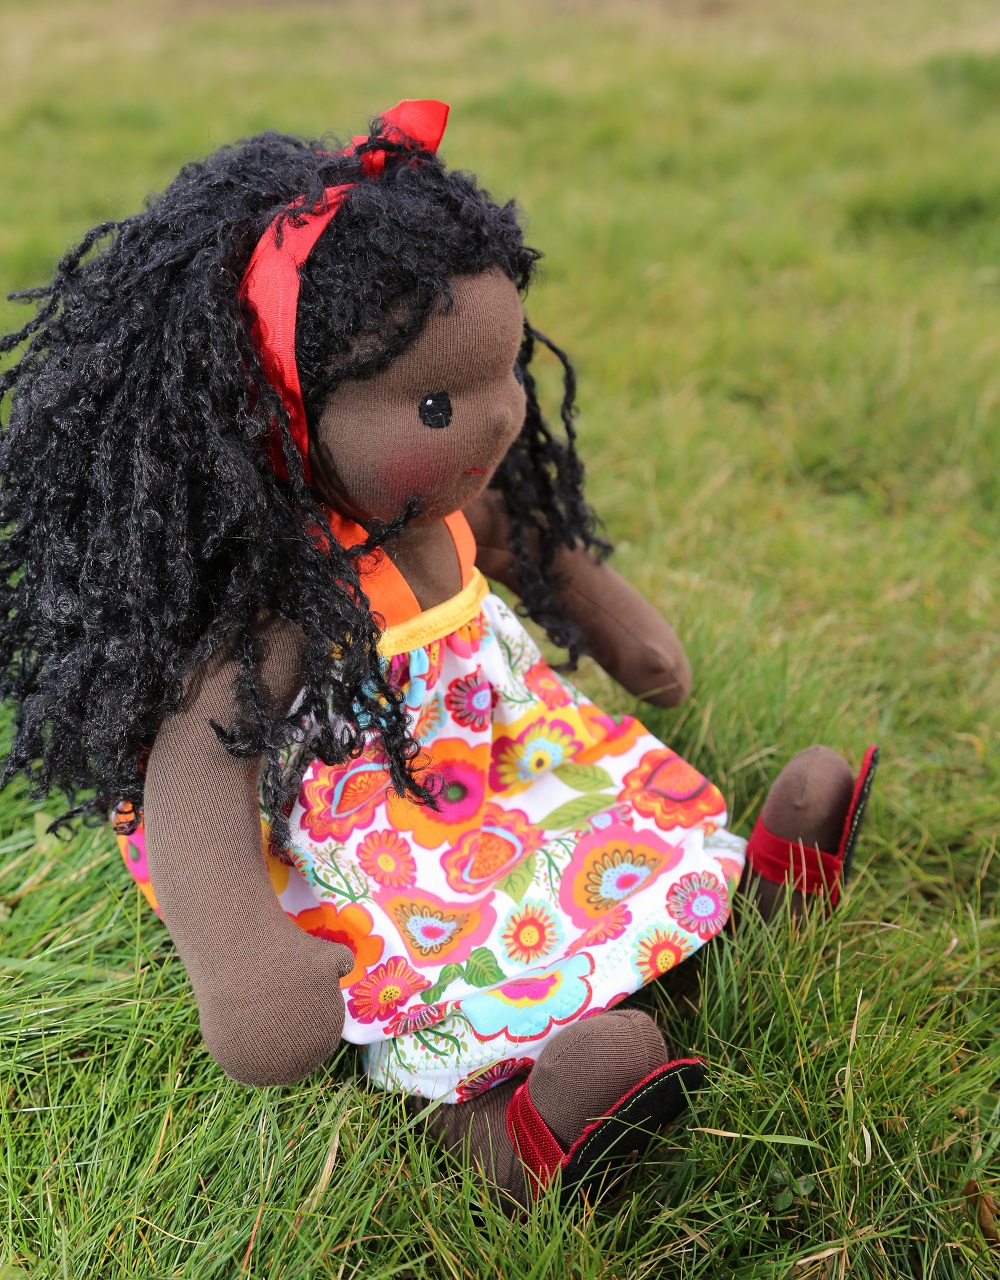 černoška panenka sedící v trávě